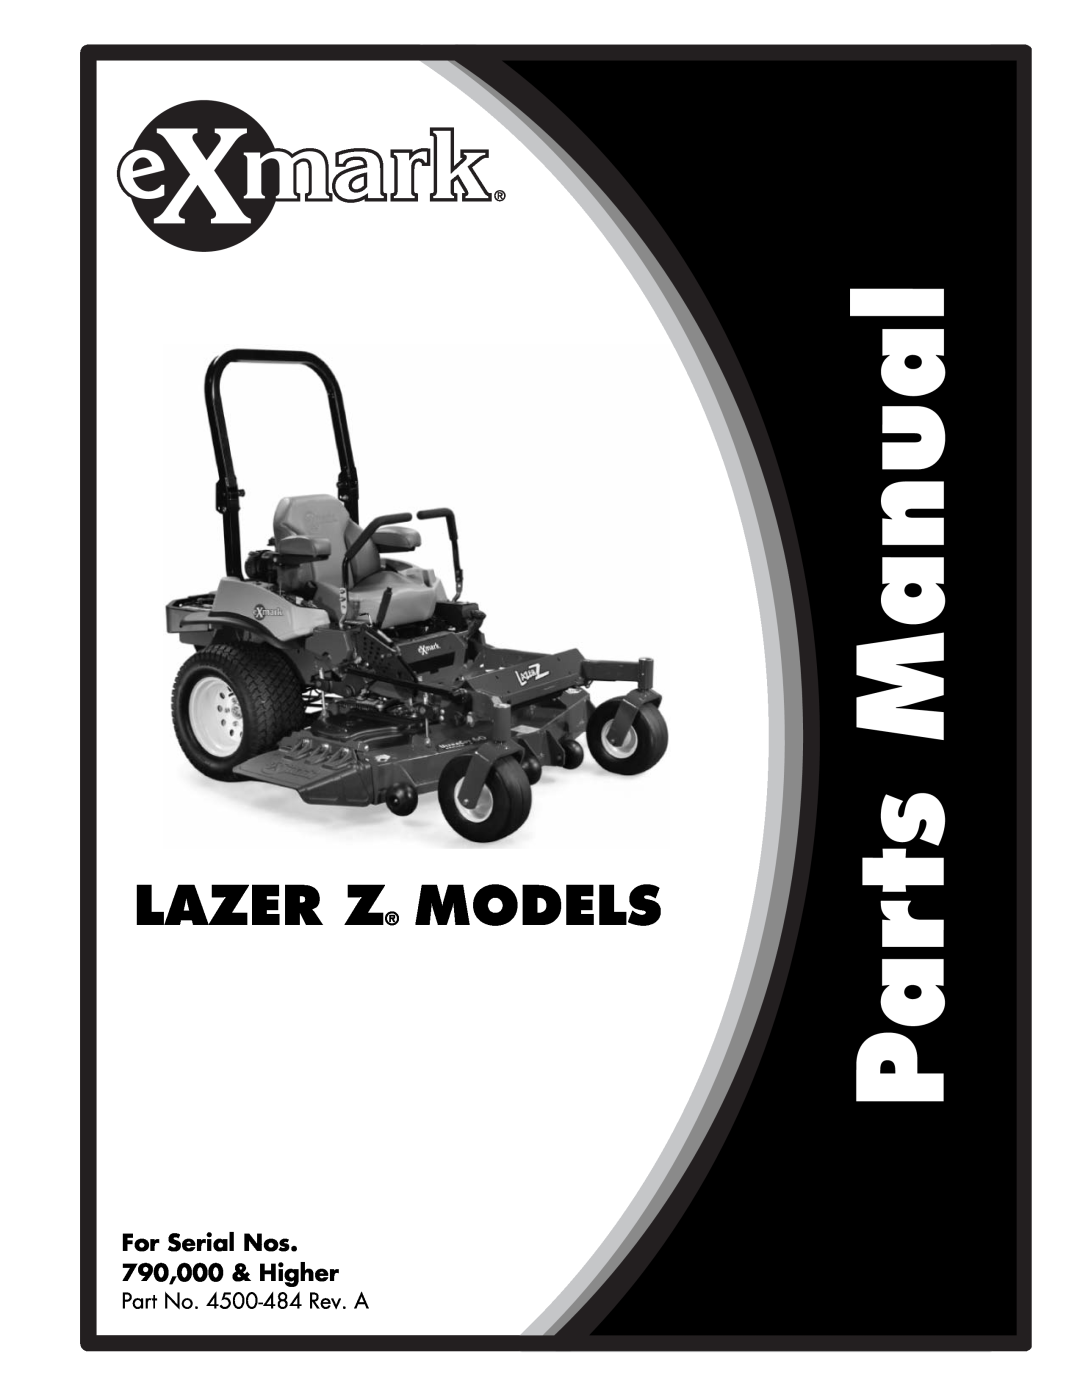 Exmark manual Lazer Z Models, For Serial Nos 790,000 & Higher, Part No. 4500-484Rev. A 